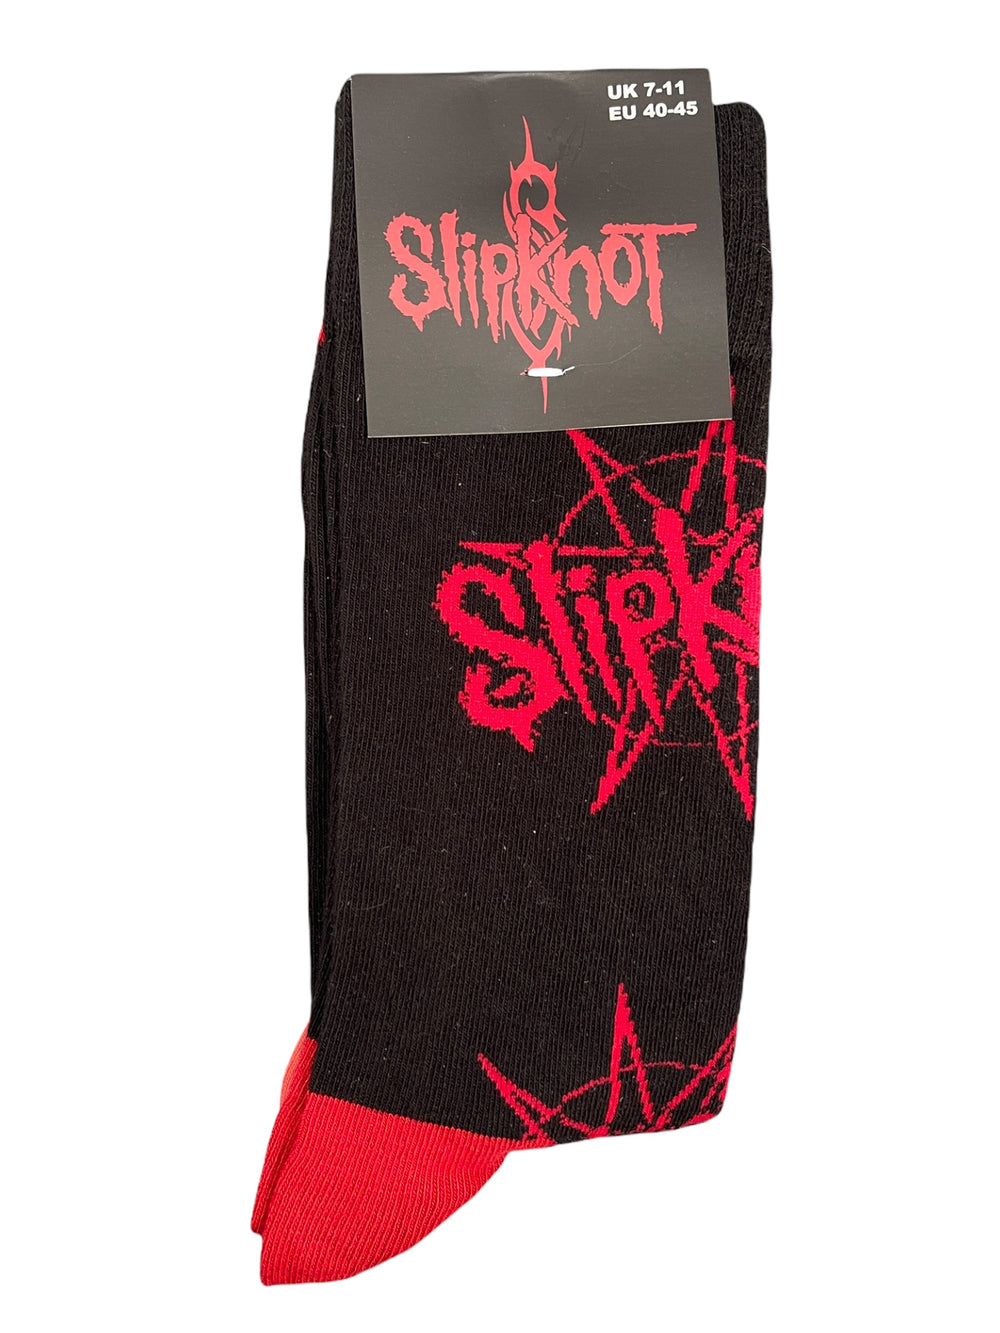 Slipknot Black Multi Logo Official Product 1 Pair Jacquard Socks Brand New